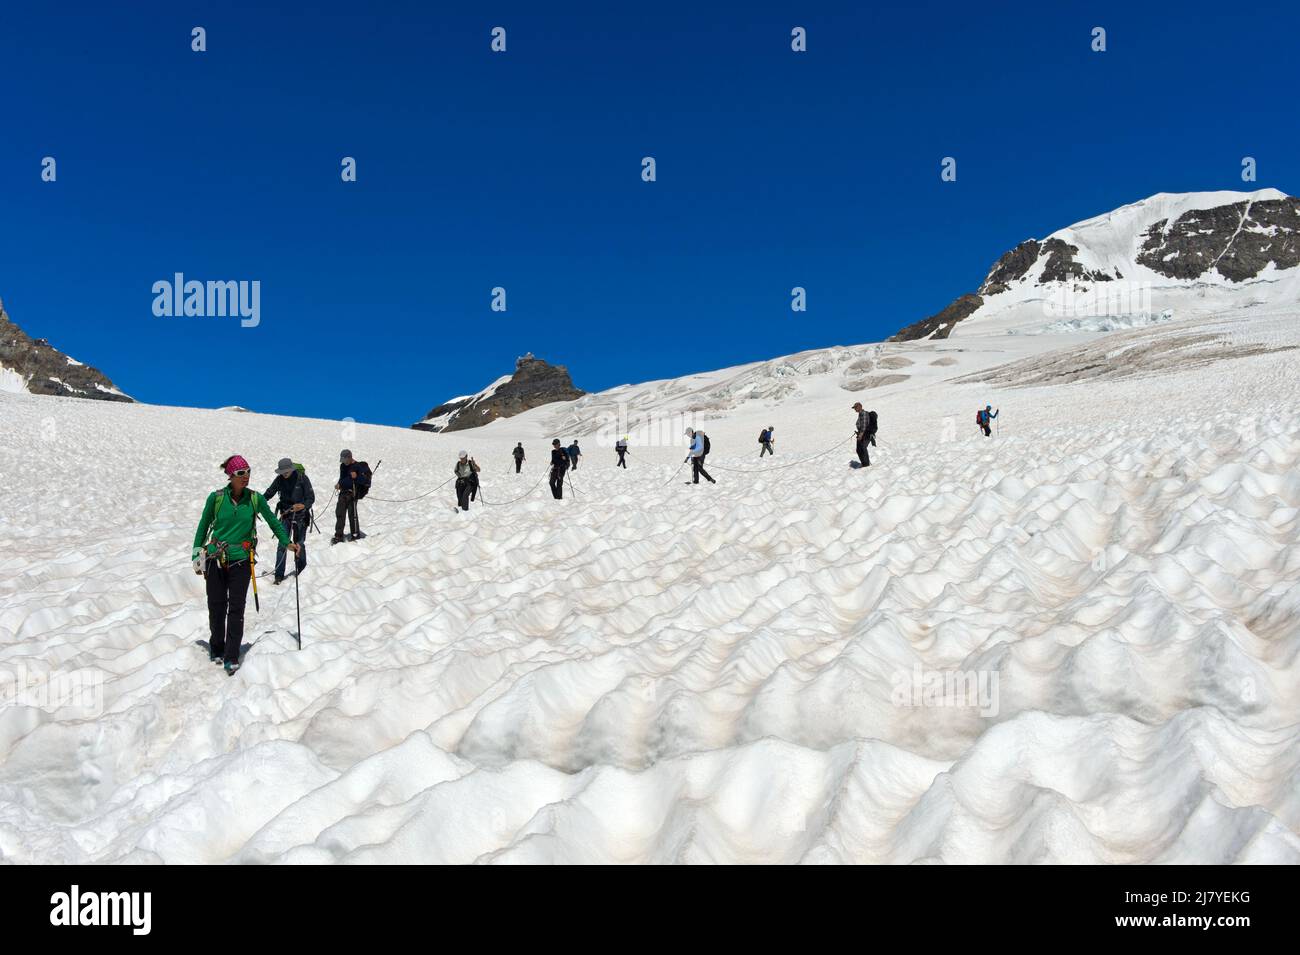 Touristes avec guide de montagne sur la neige du glacier Jungfraufirn, Jungfraujoch, Grindelwald, Oberland bernois, Suisse Banque D'Images